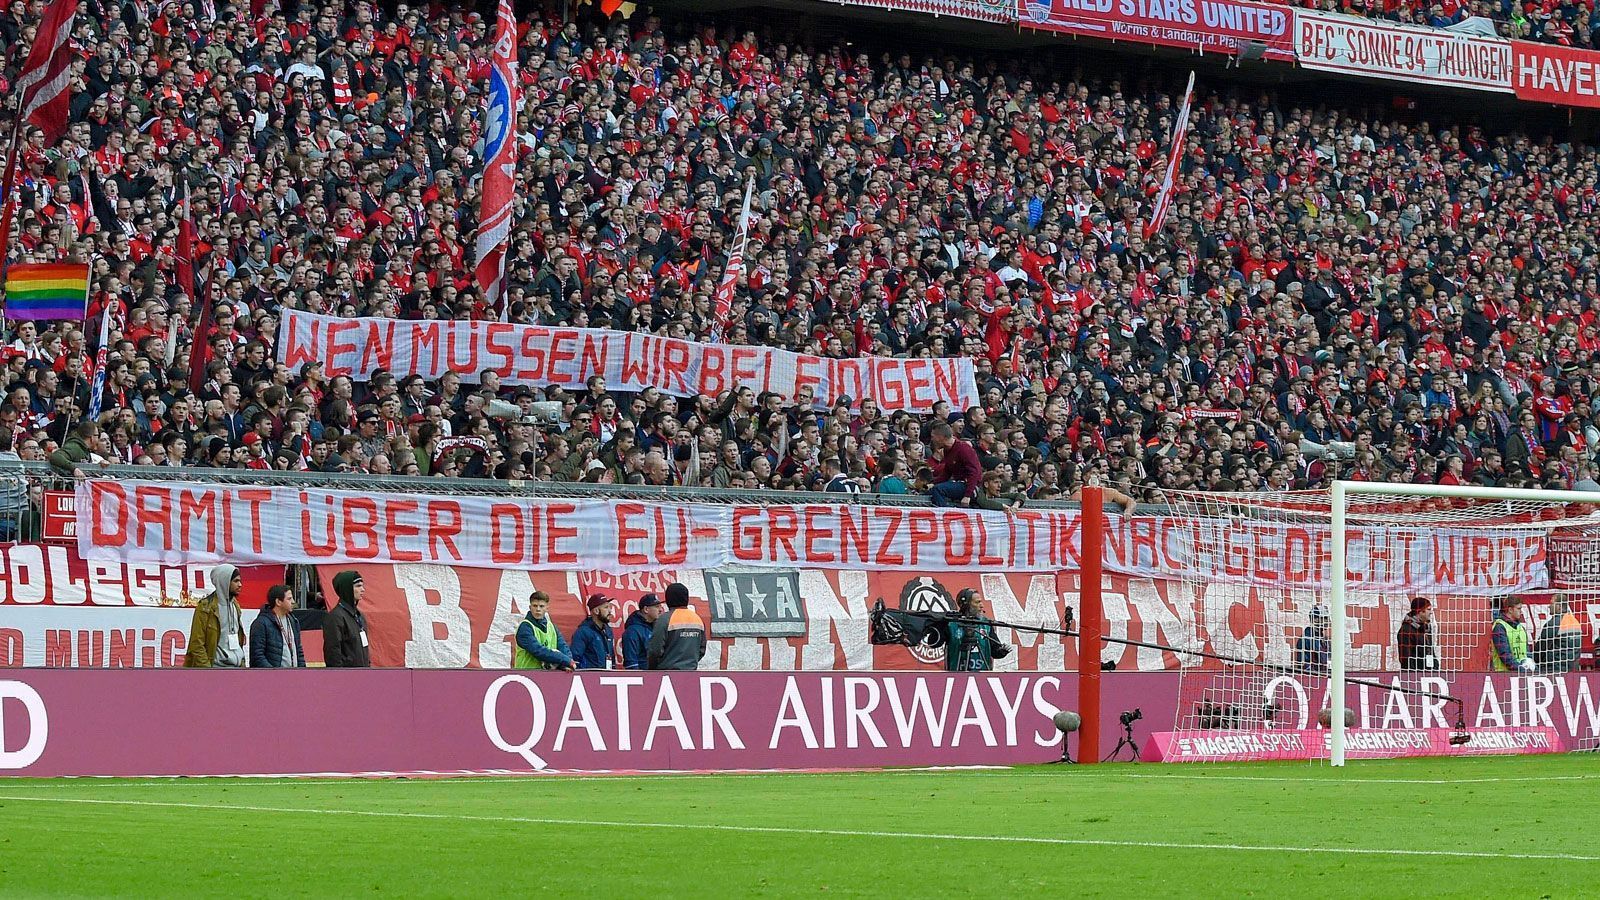 
                <strong>Fans des FC Bayern München</strong><br>
                "Wen müssen wir beleidigen, damit über die EU-Grenzpolitik nachgedacht wird?" - Die Bayern-Fans kritisierten im Rahmen der "Causa Hopp" die Schwerpunktsetzung in der öffentlichen Aufmerksamkeit.
              